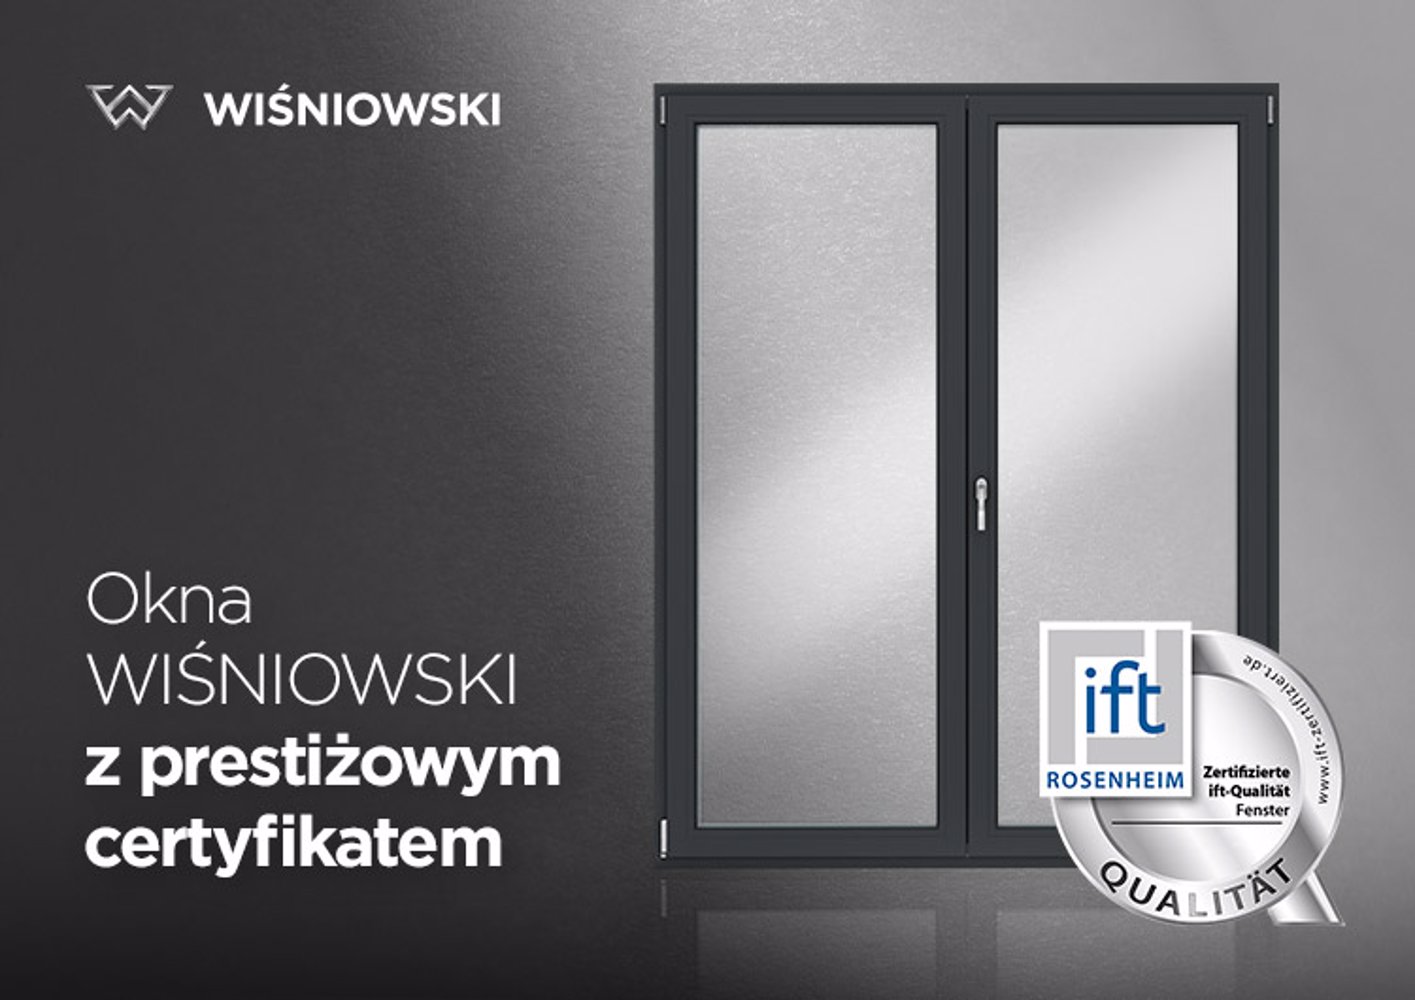 Okna WIŚNIOWSKI z certyfikatem IFT QUALITY SILVER  Instytutu Rosenheim